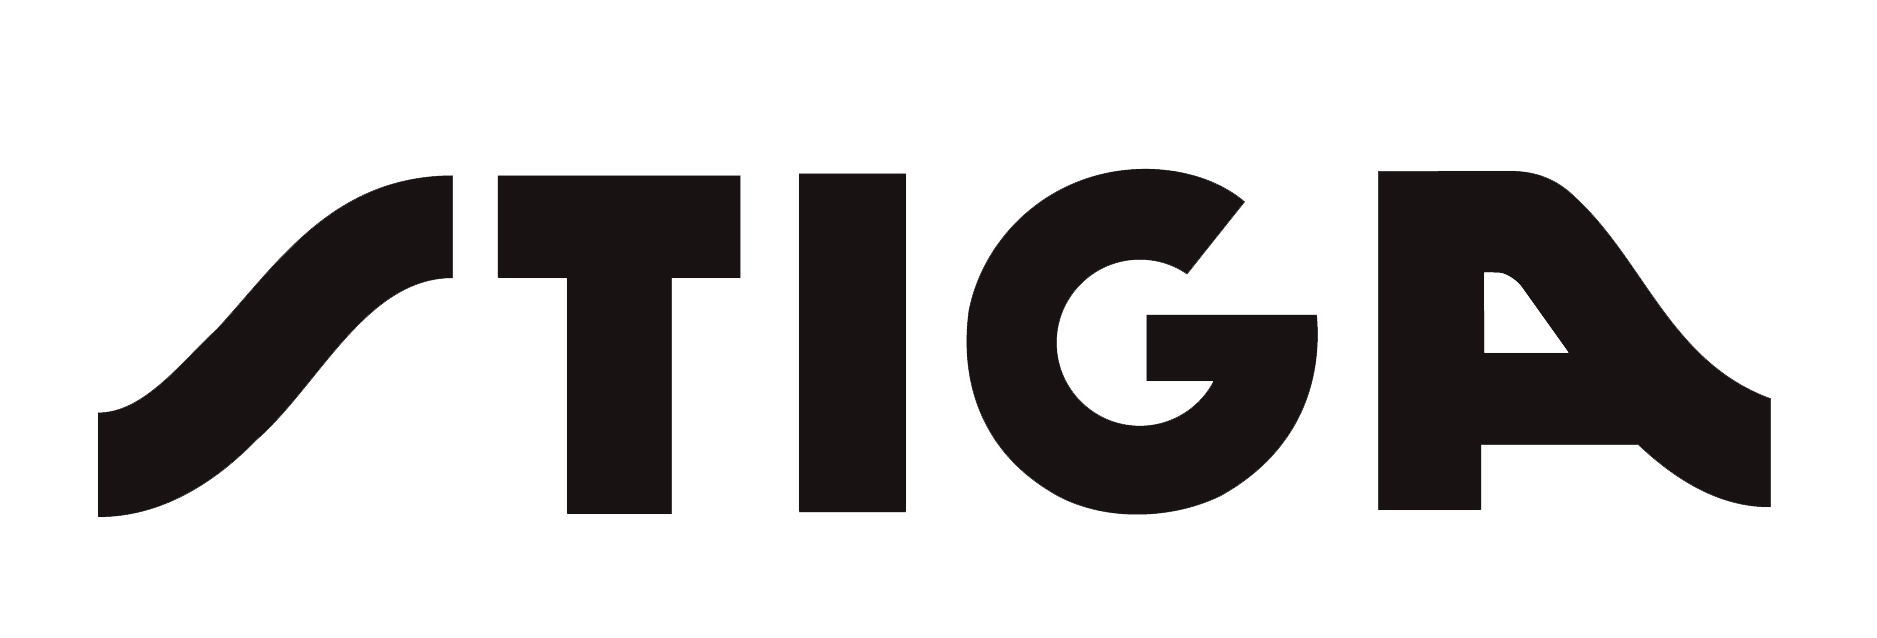 STIGA logo